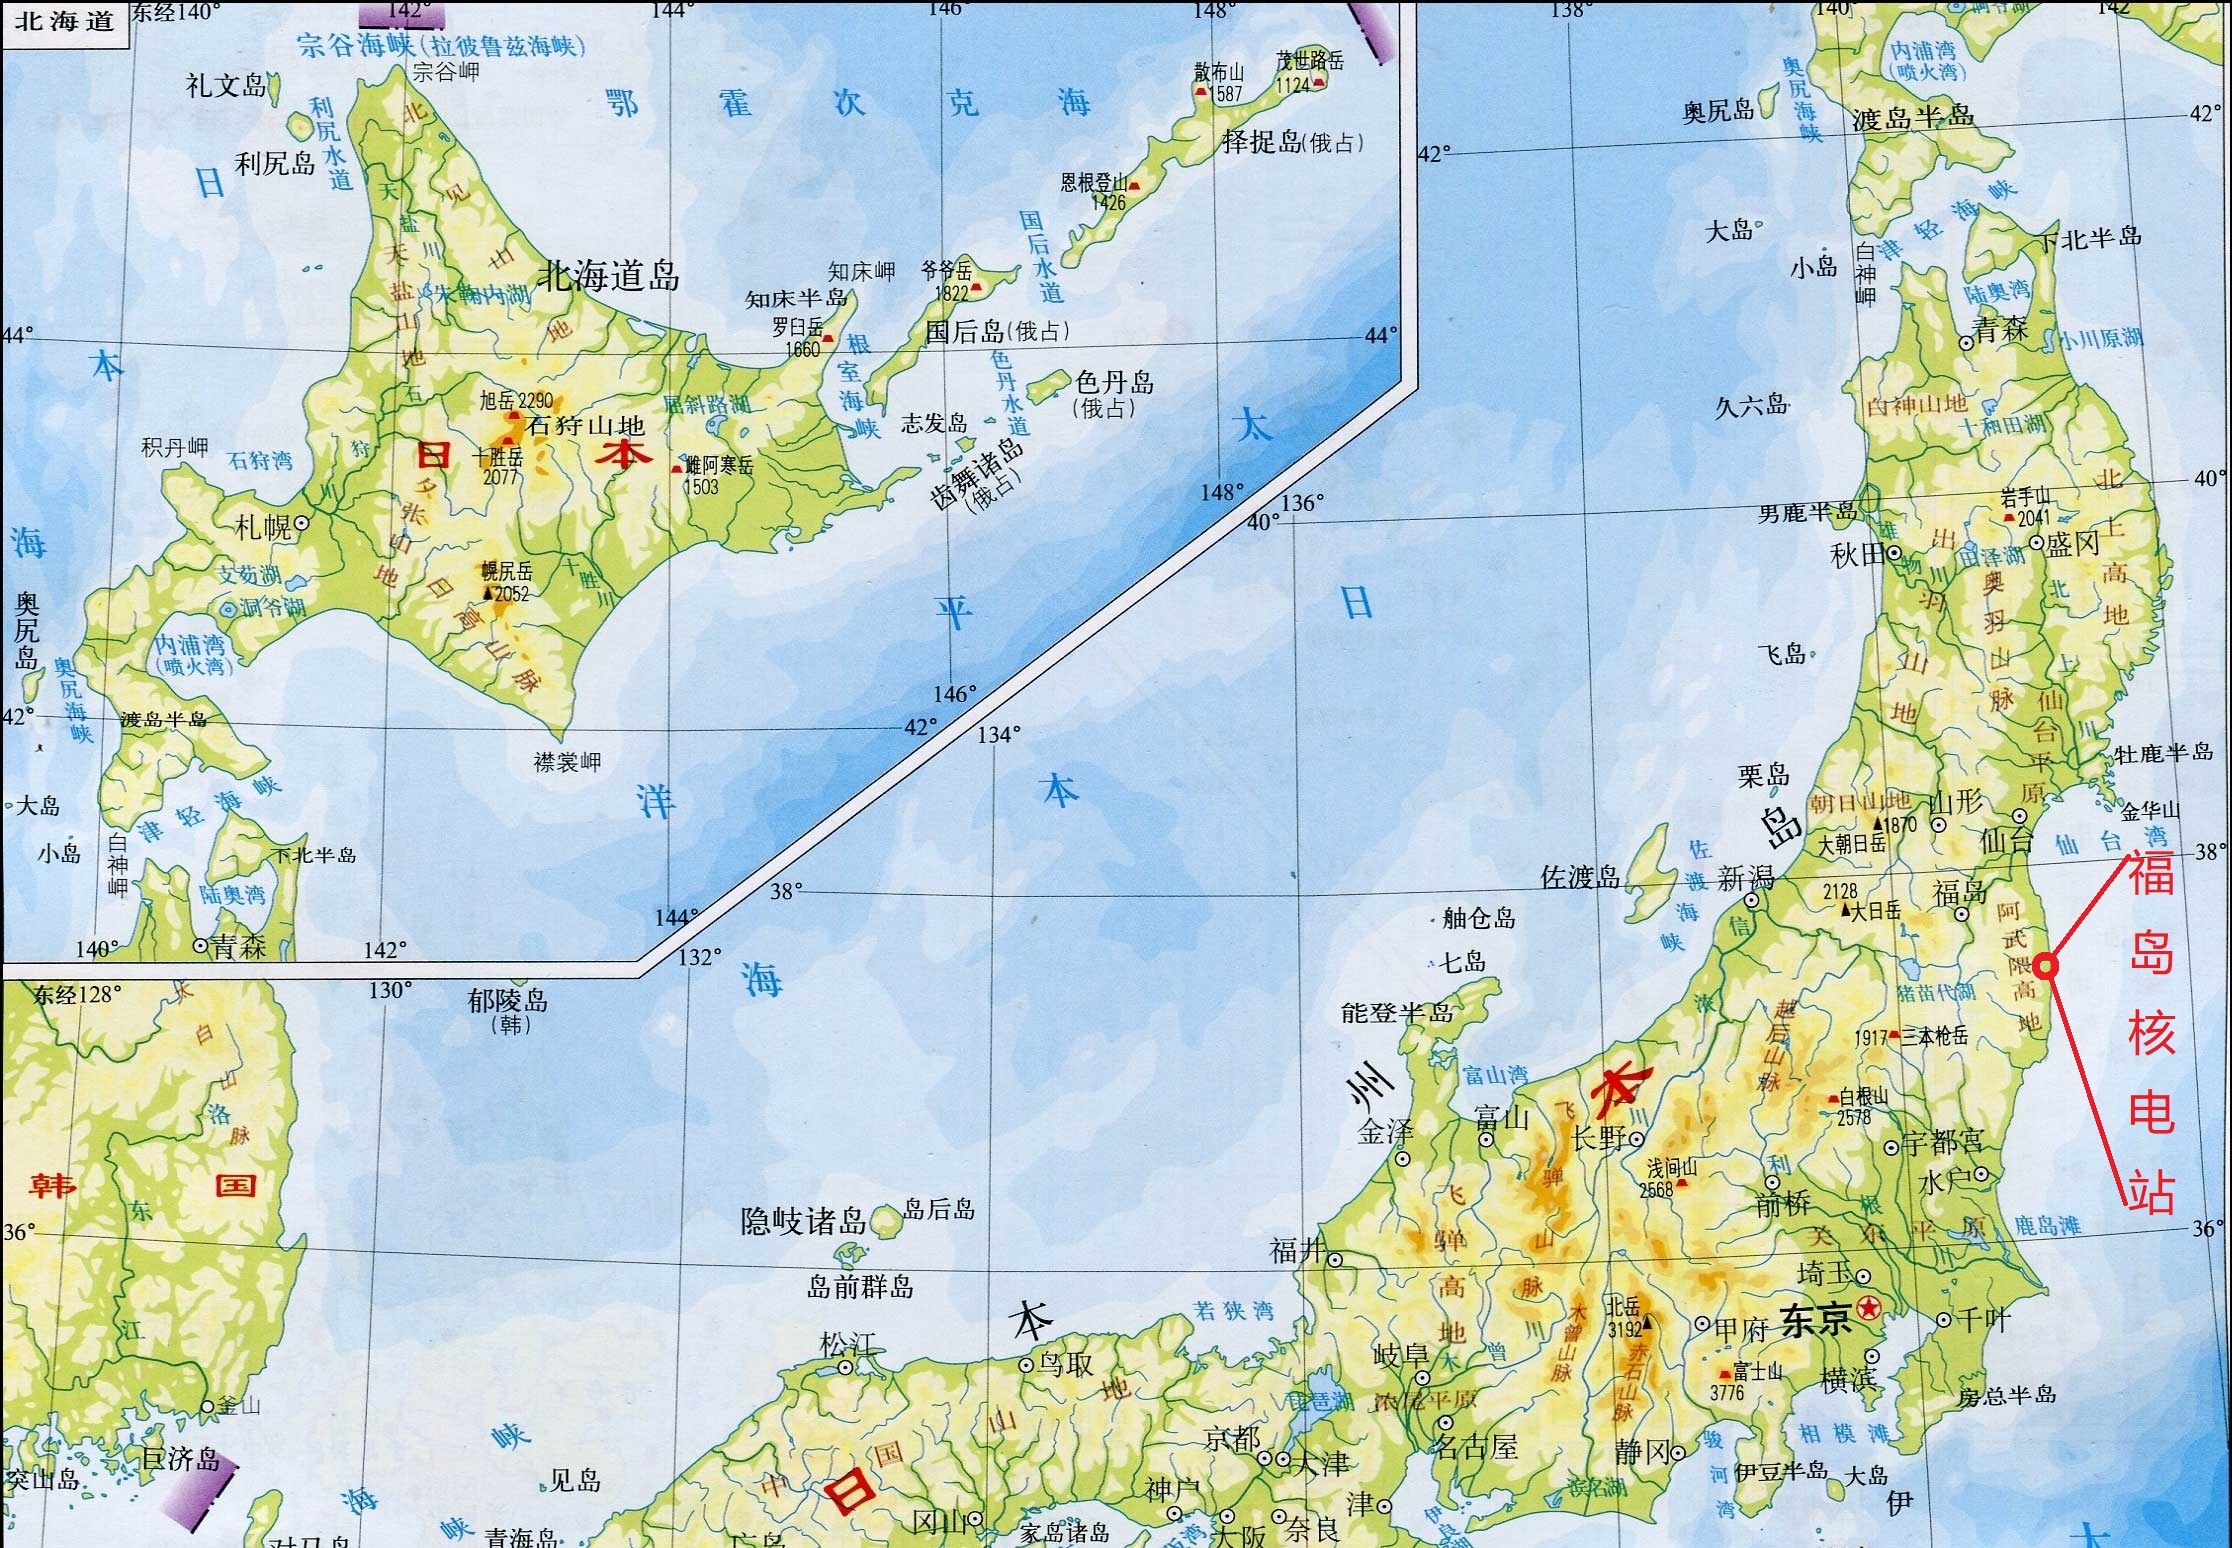 福岛核电站位置图